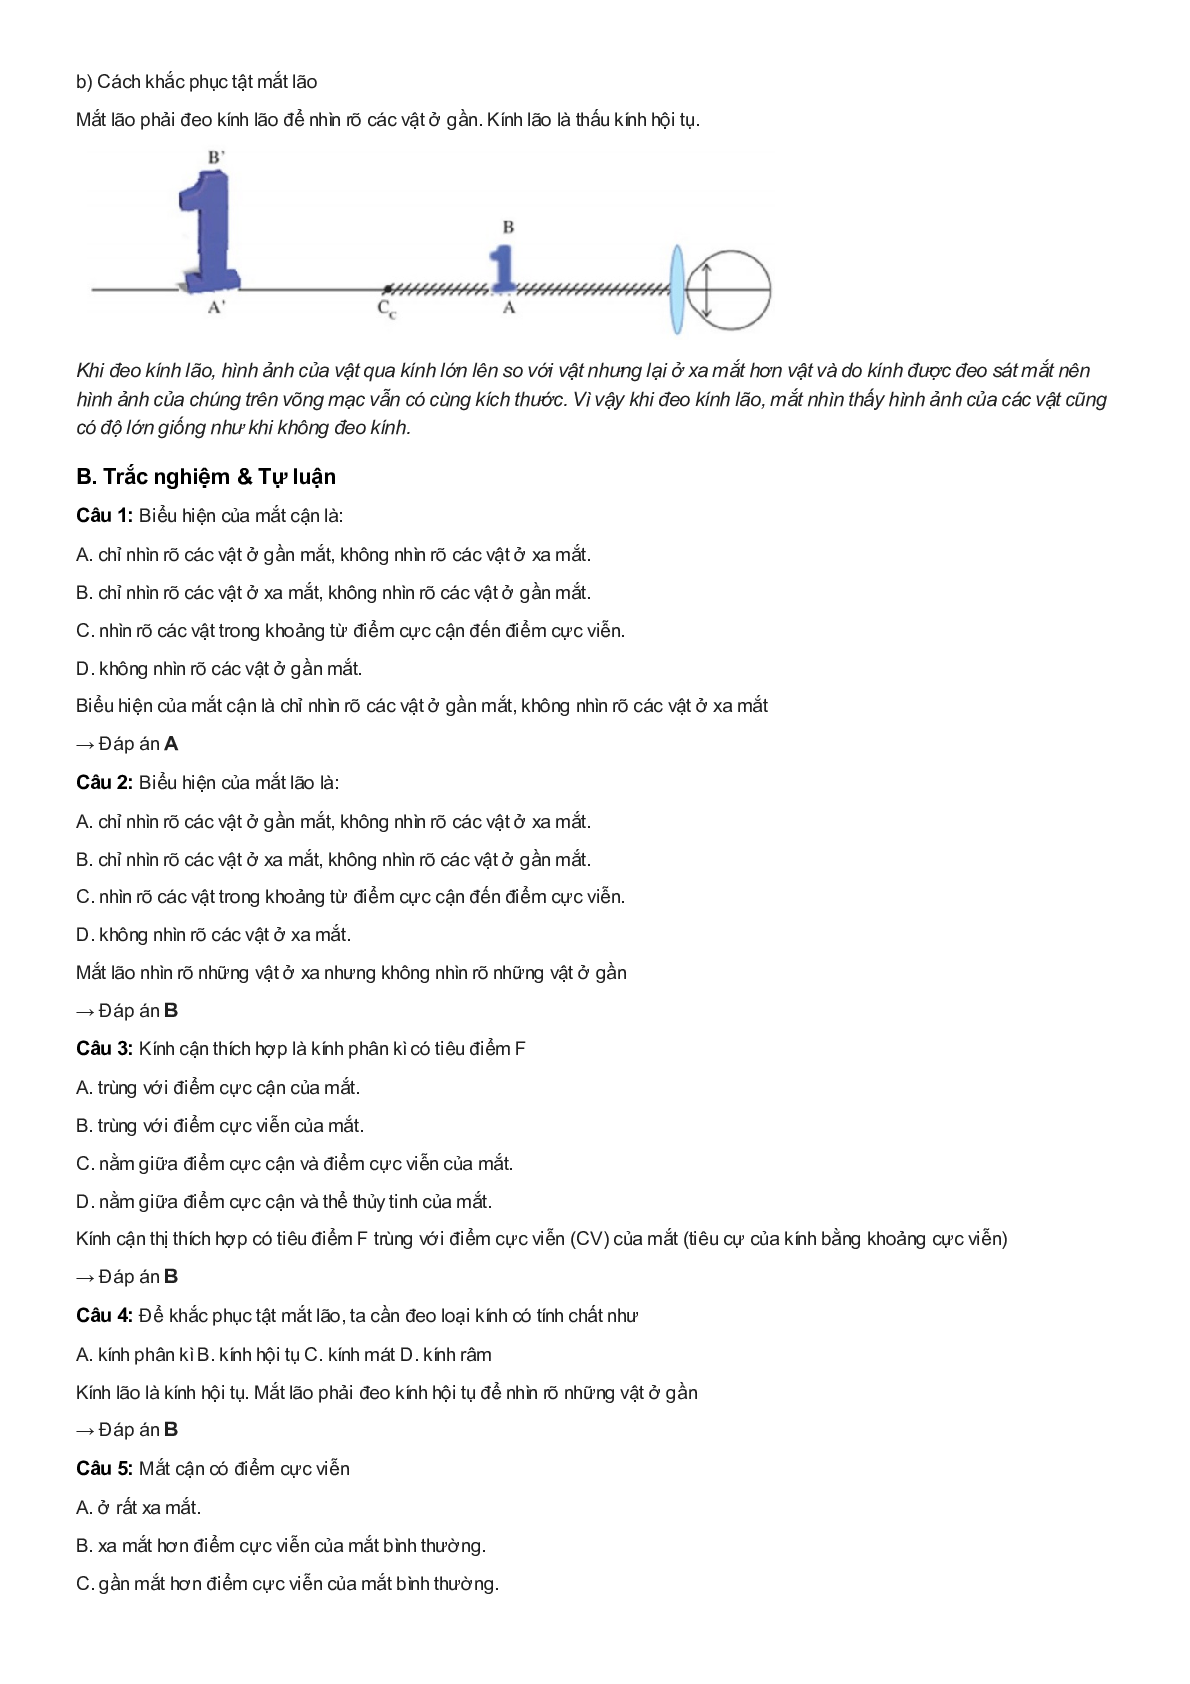 Chuyên đề Vật lý 9: Mắt cận và mắt lão (trang 2)